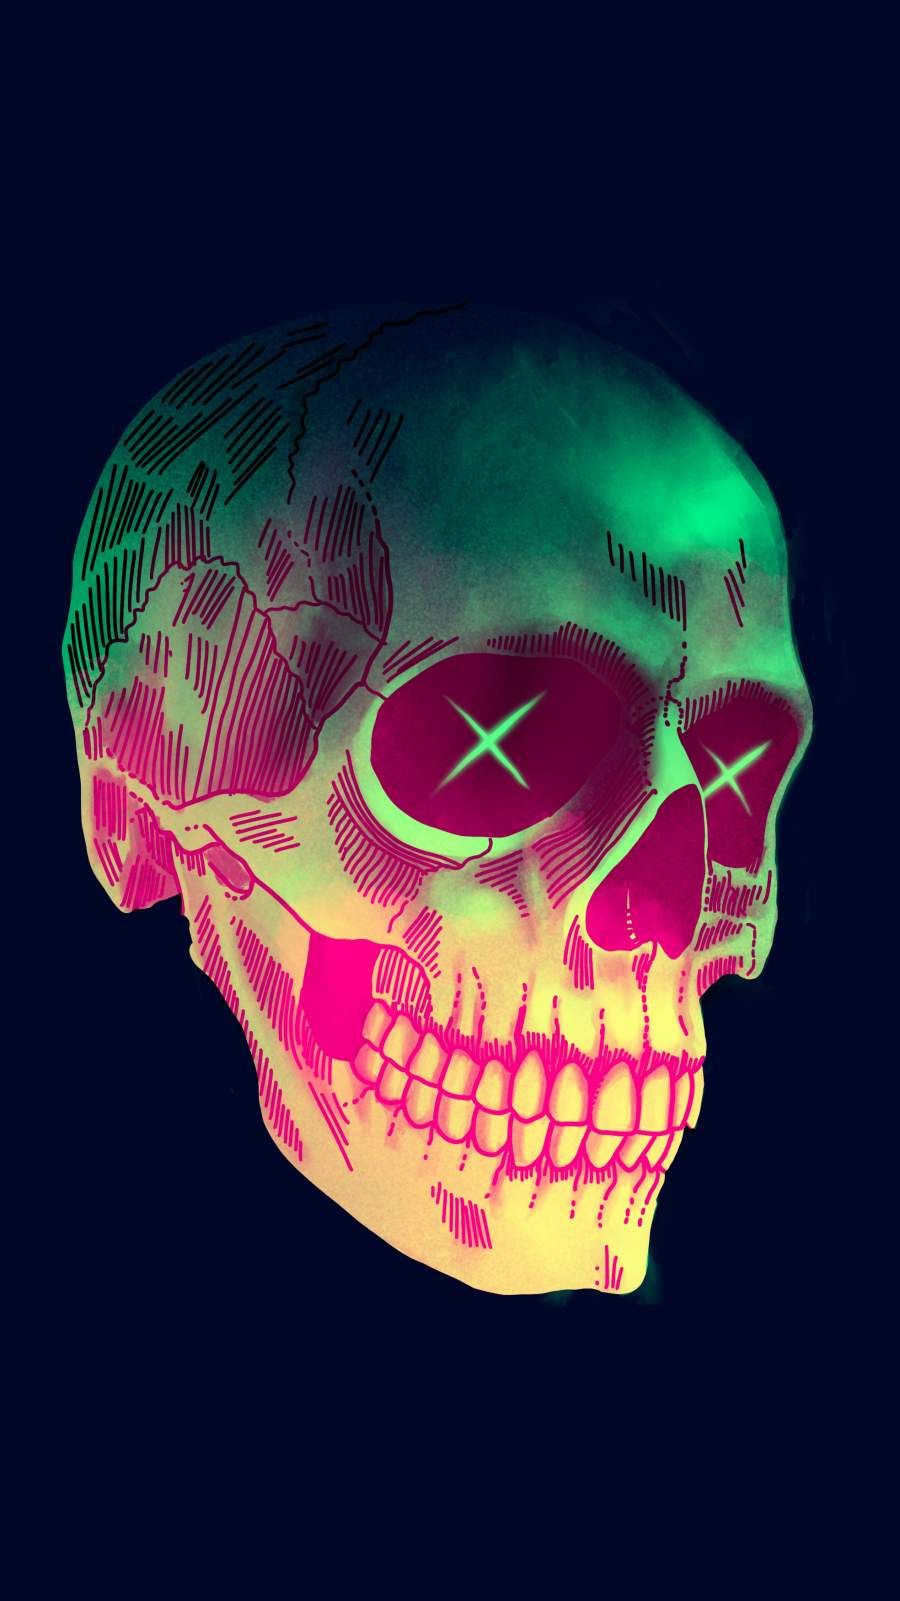 Art Skull iPhone Wallpaper. Skull wallpaper, Sugar skull wallpaper, Skull artwork